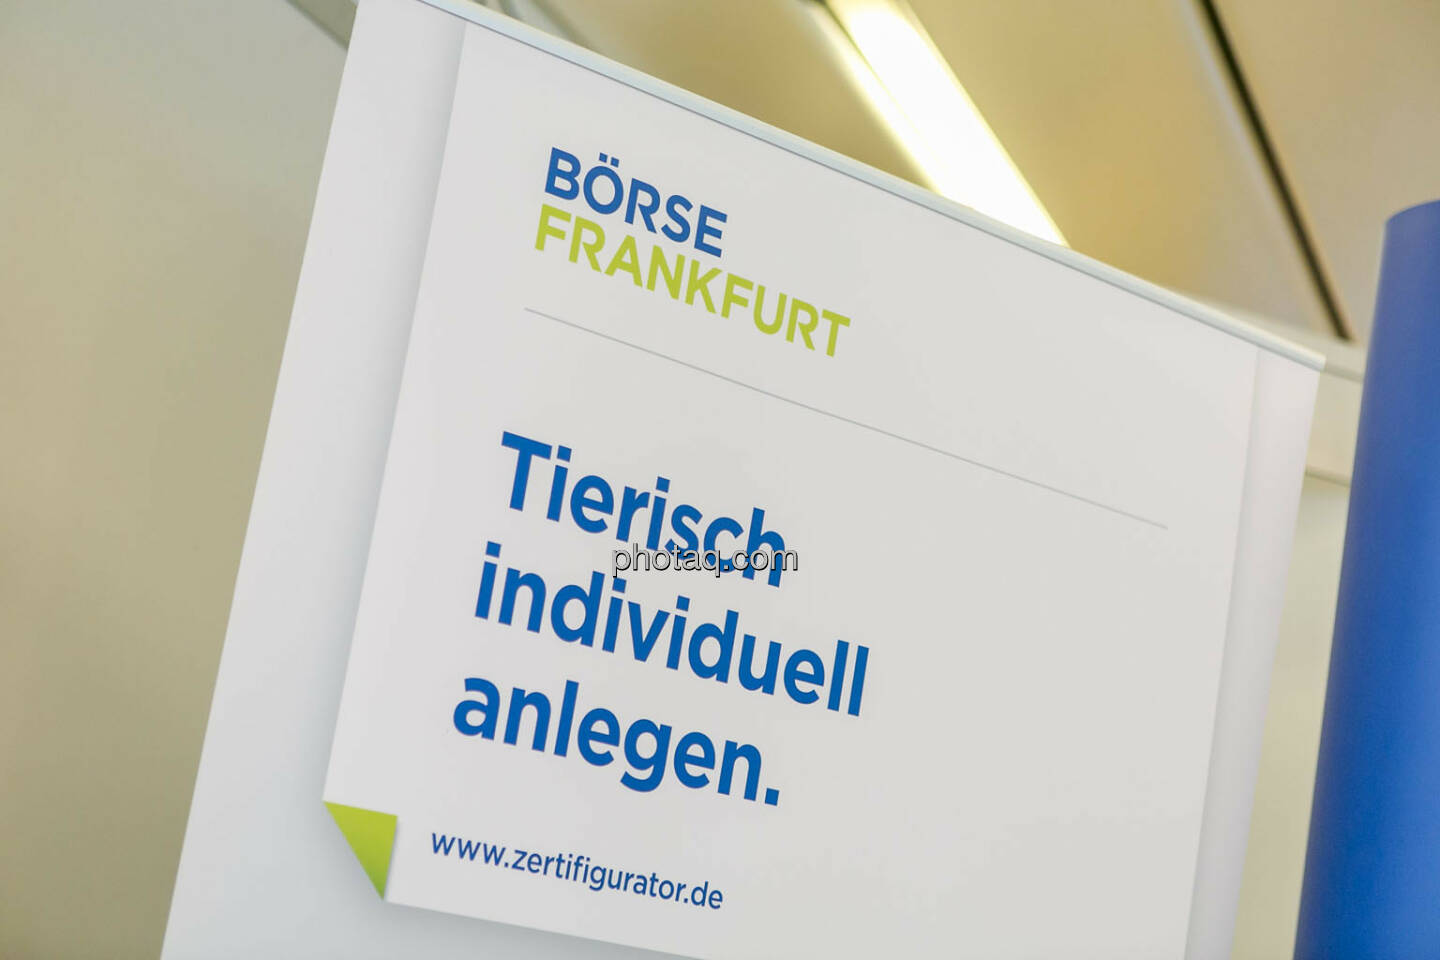 Börse Frankfurt, Tierisch individuell anlegen - Börsentag Wien, 20.5.2017